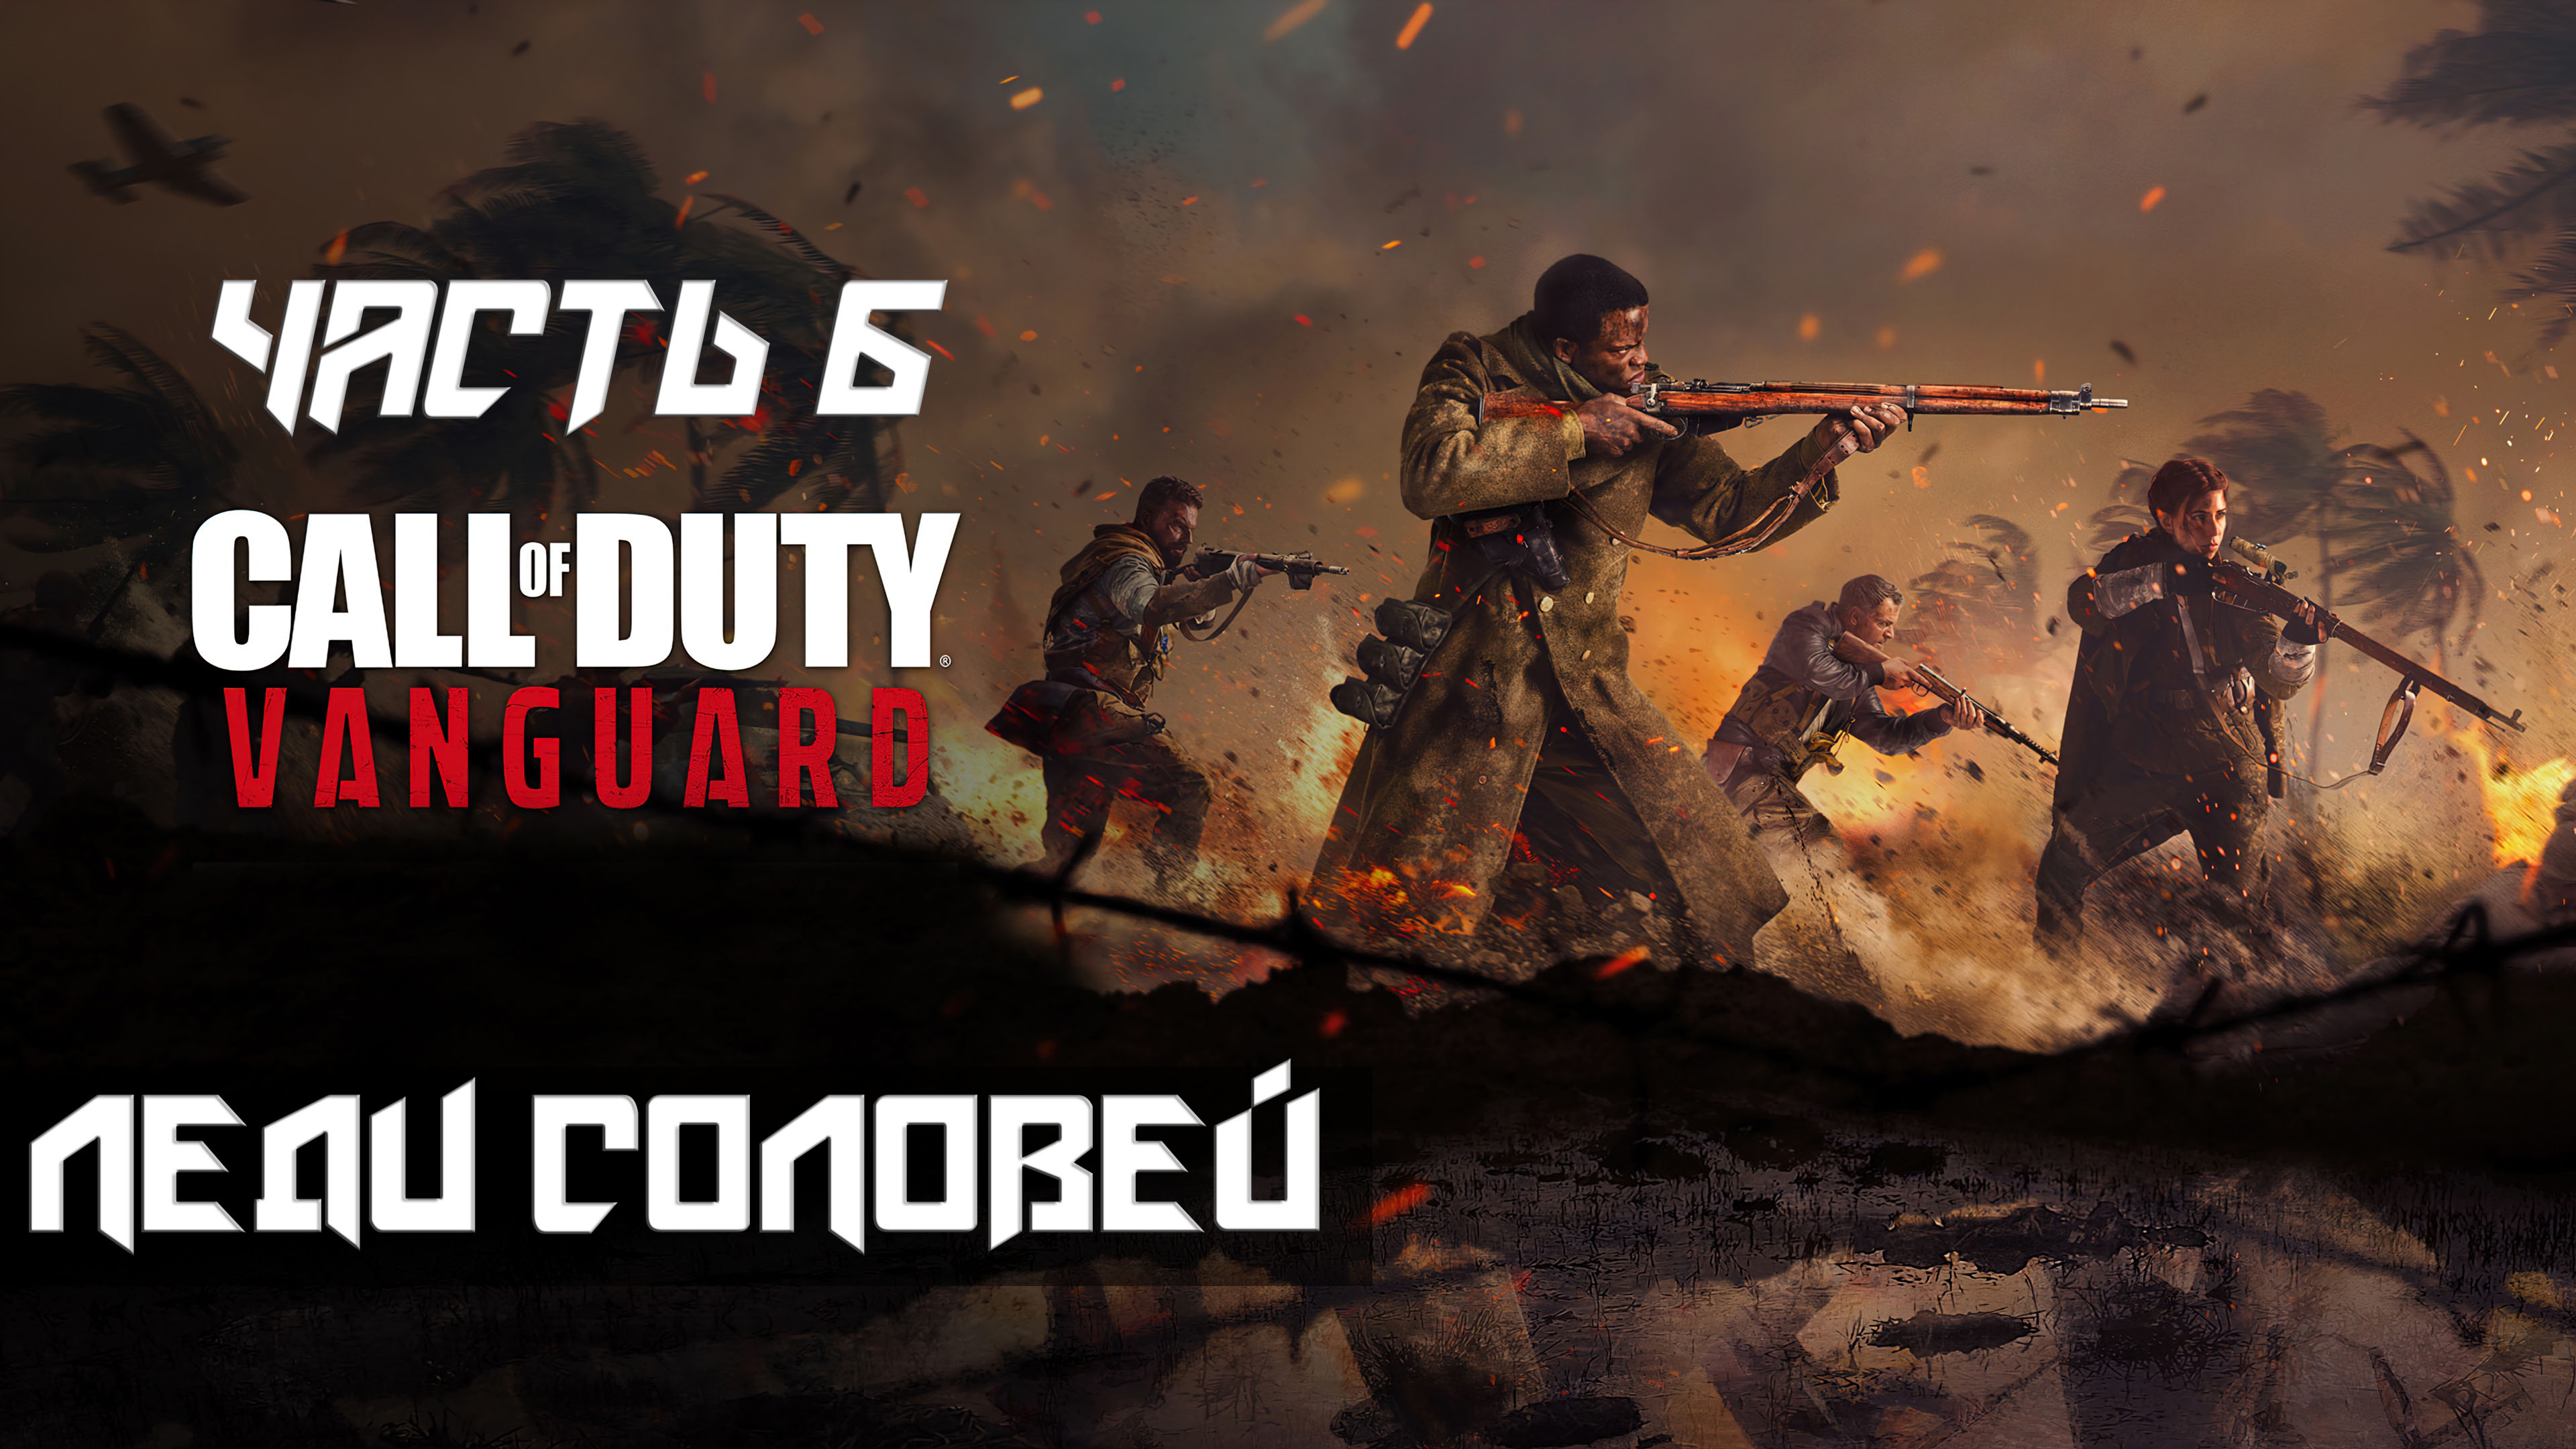 Call of Duty Vanguard ➤ Прохождение — Часть 6: Леди соловей (без комментариев)